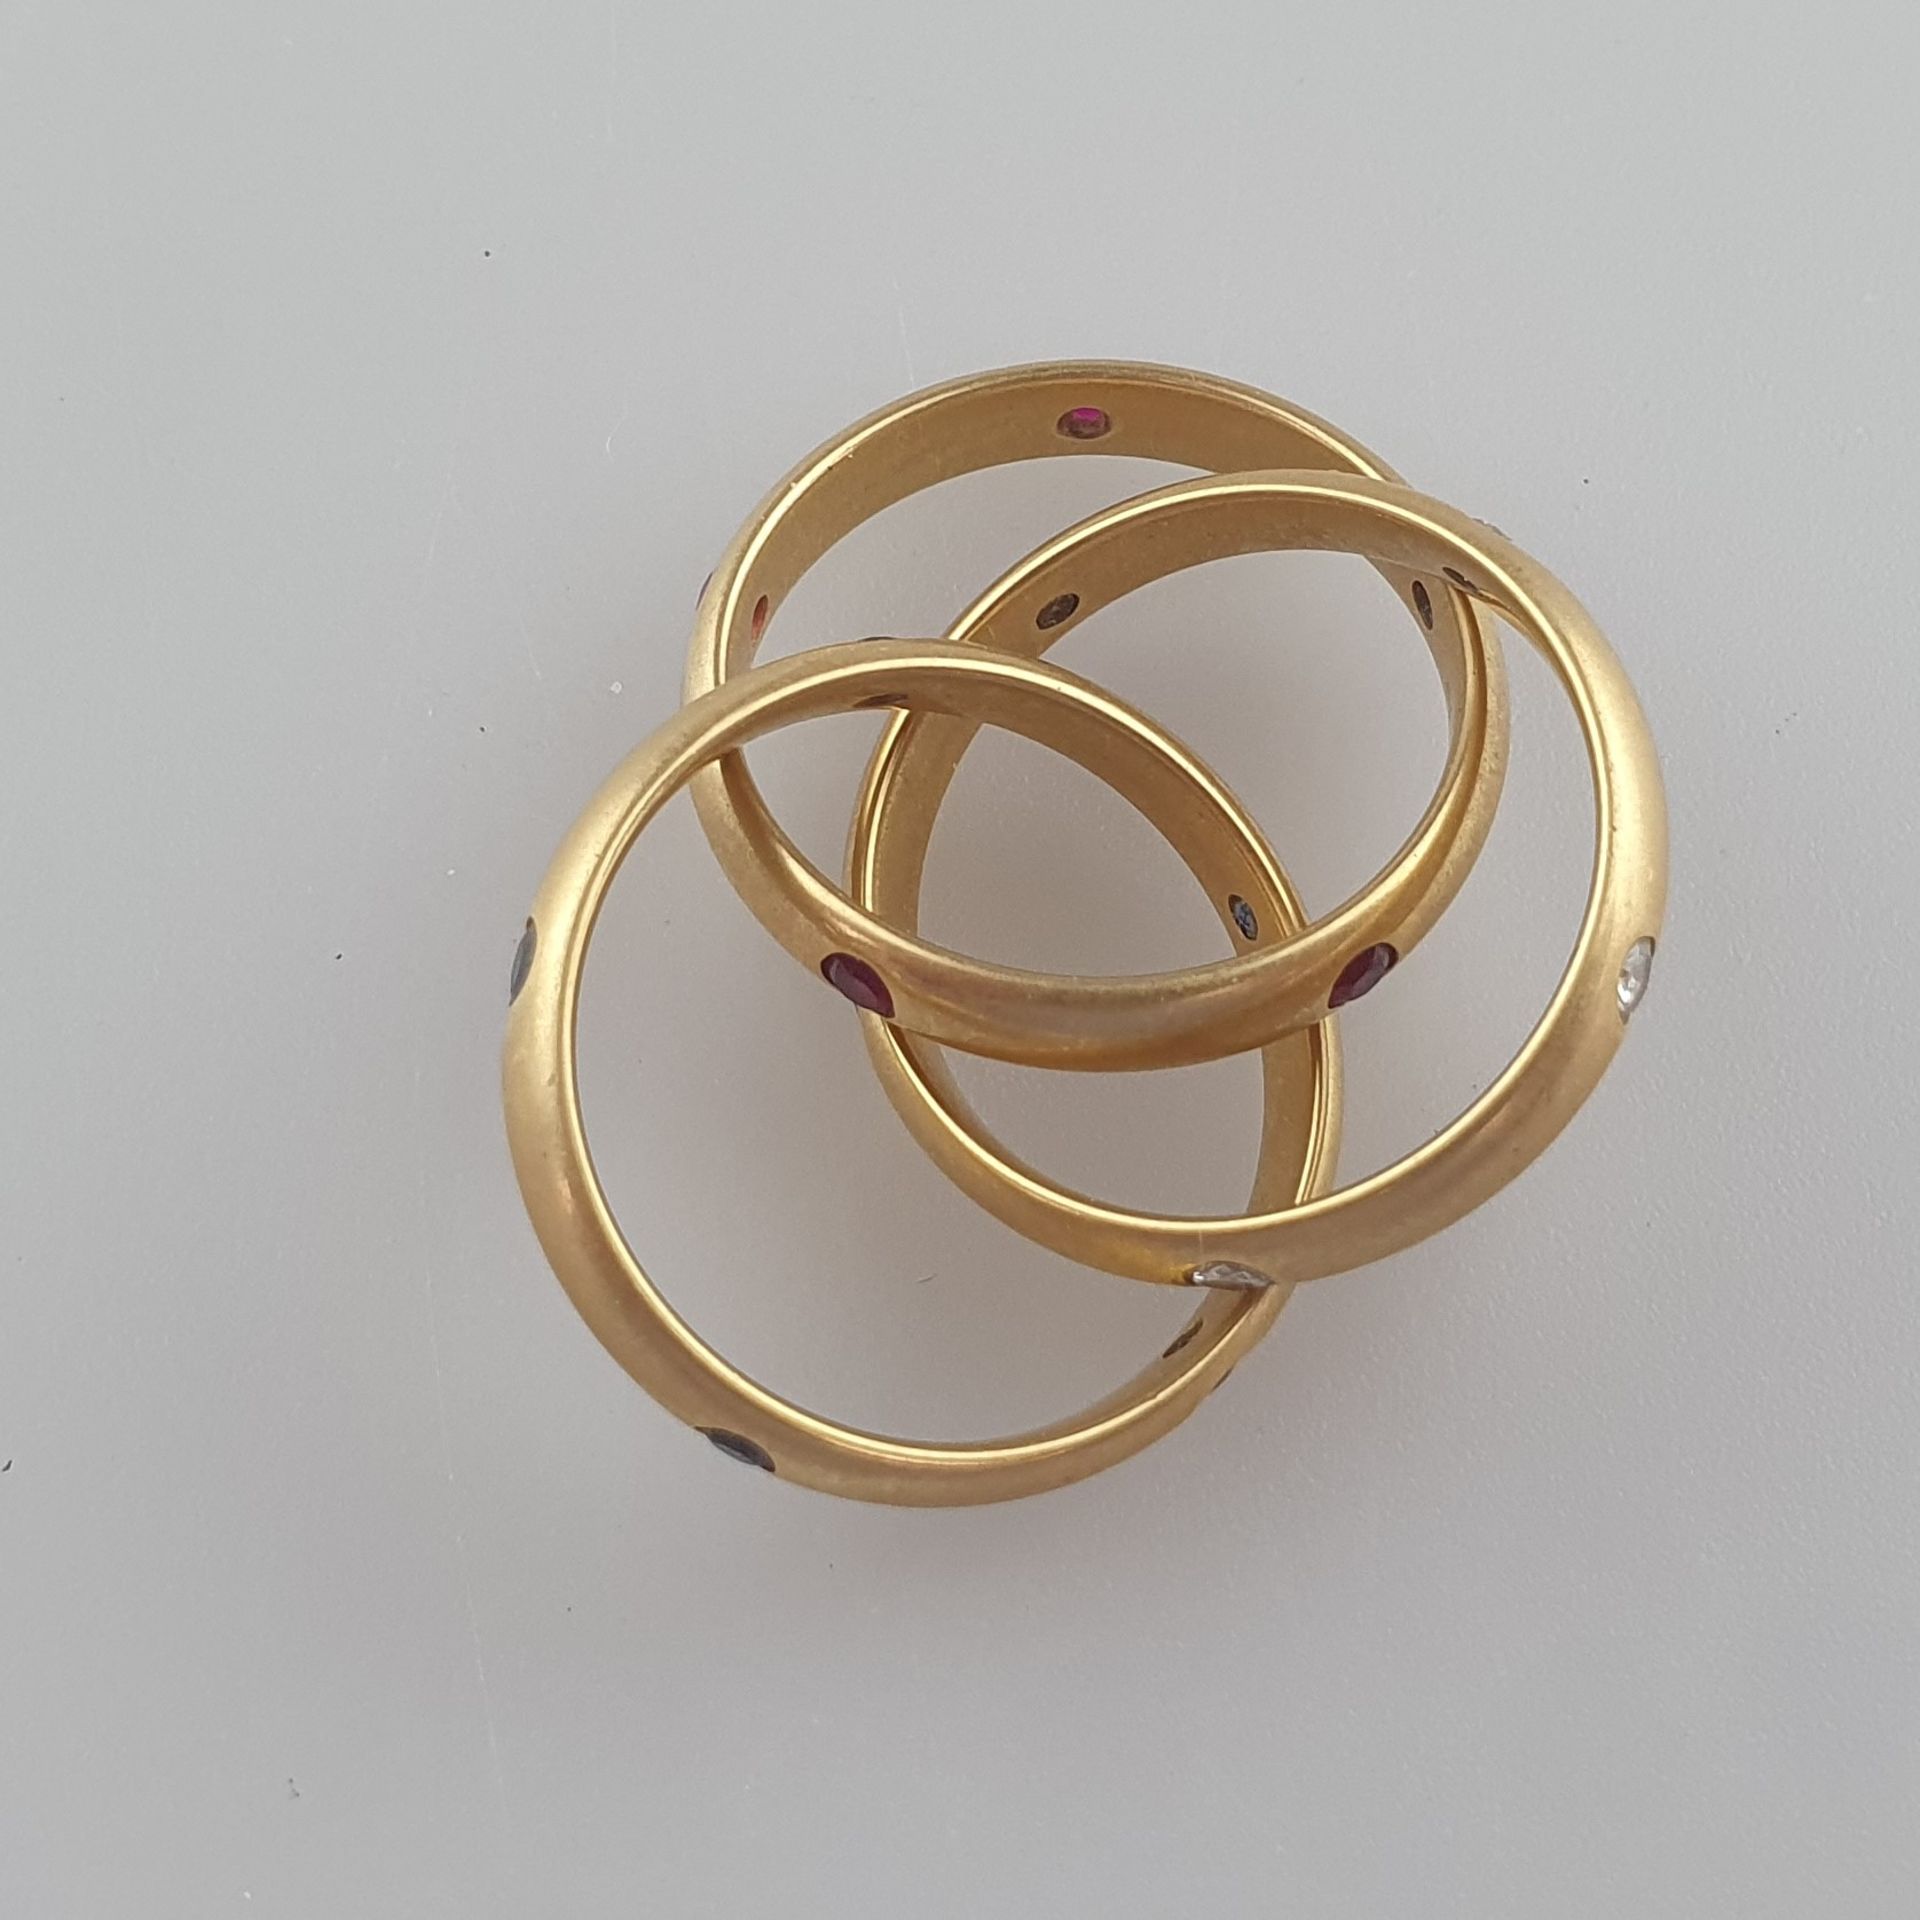 CARTIER-Ring "Trinity"- Gelbgold 750/000, die drei beweglich ineinander verschlungene Ringe von ca. - Bild 6 aus 6